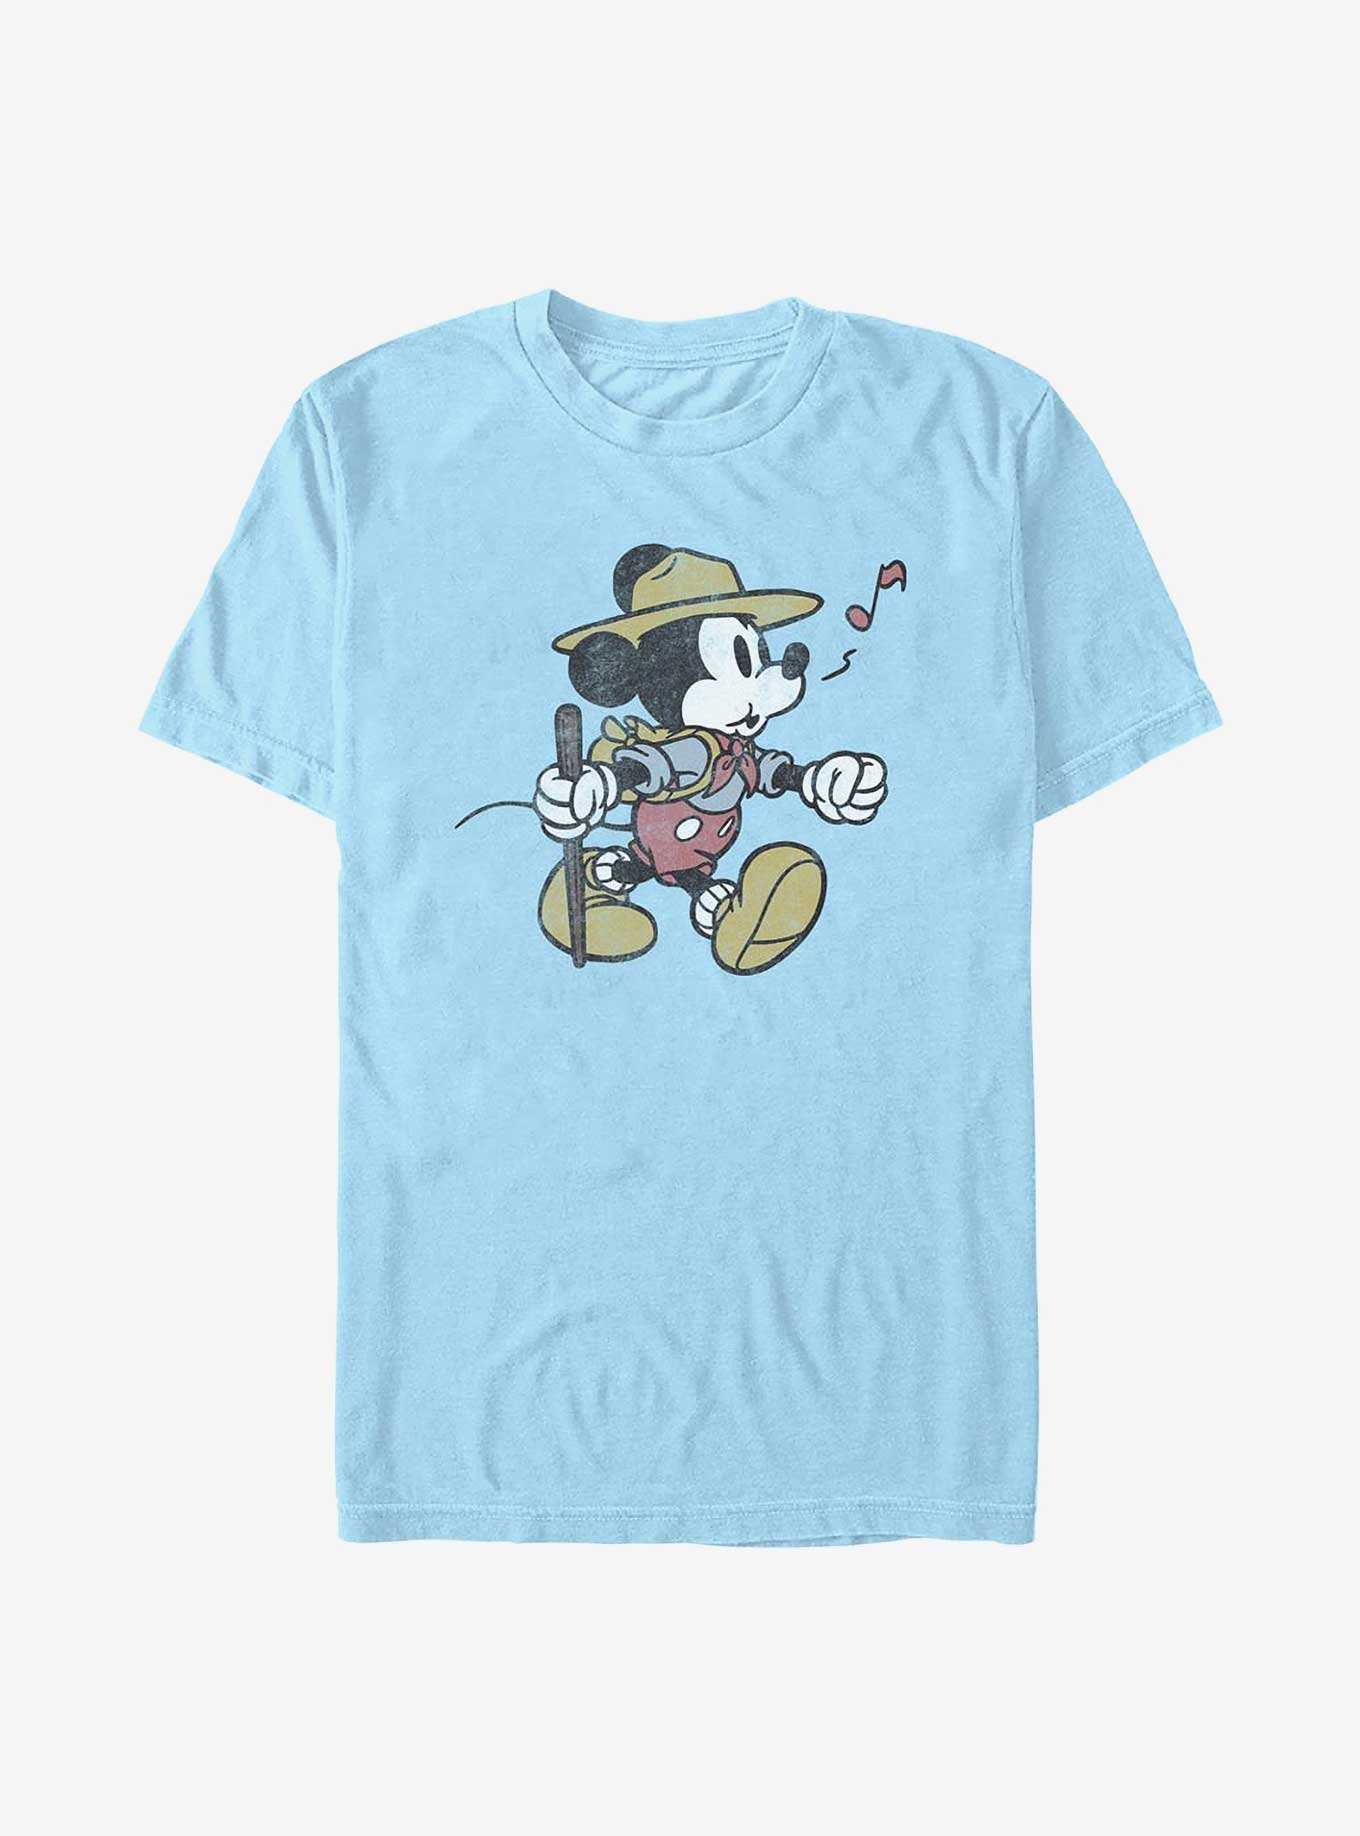 Disney Mickey Mouse Mickey Likes Hikes T-Shirt, , hi-res